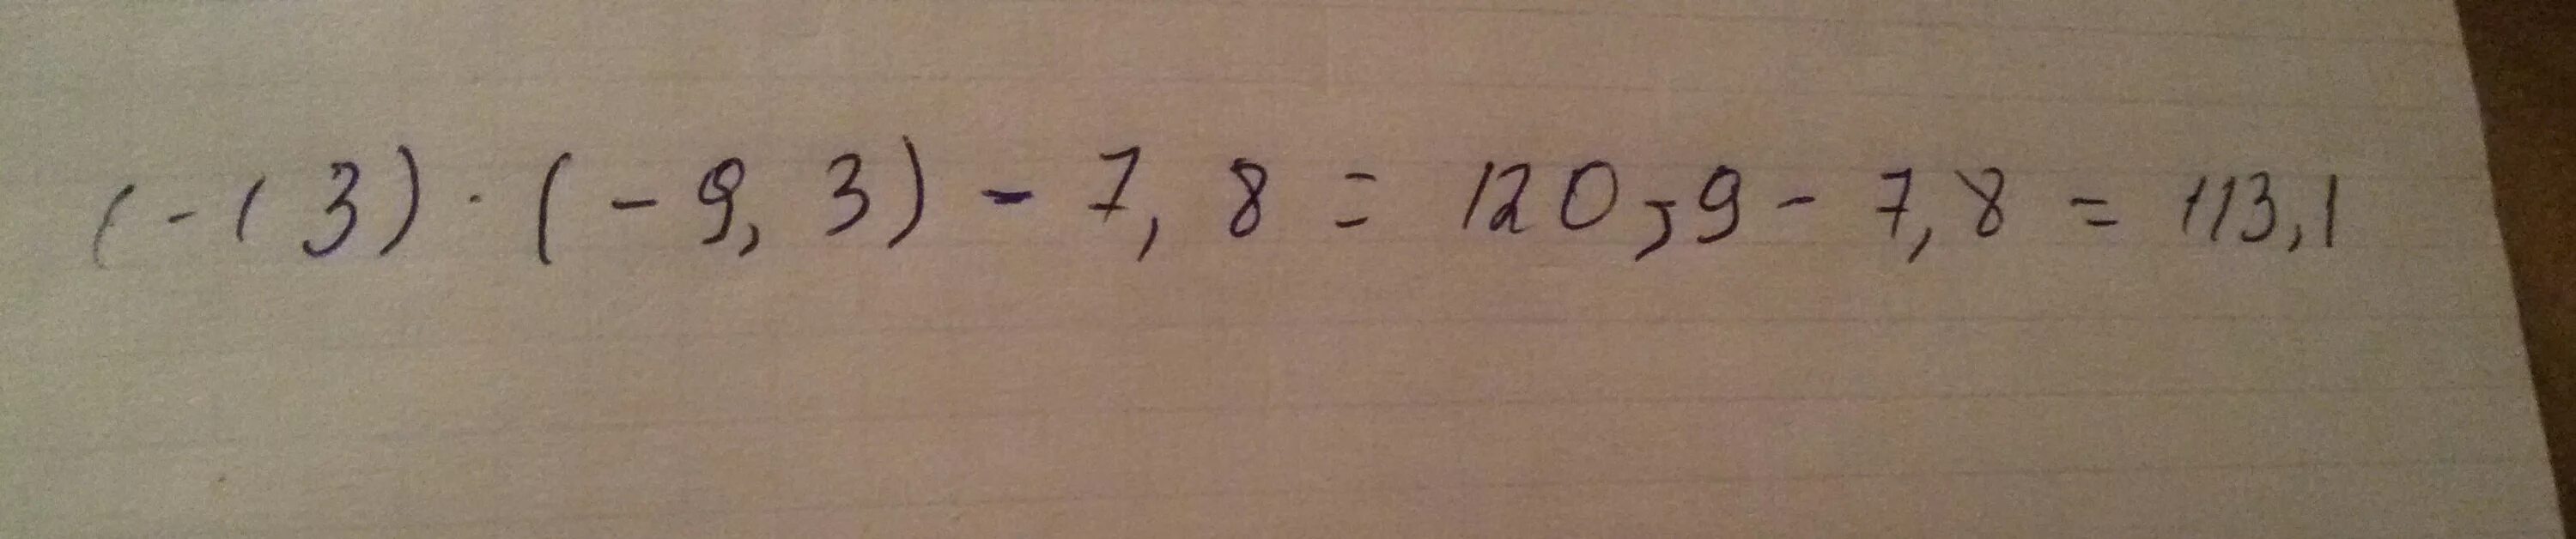 3 6 9 13 мая. -13×(-9,3)-7,8 решение. 8/13:7/9.